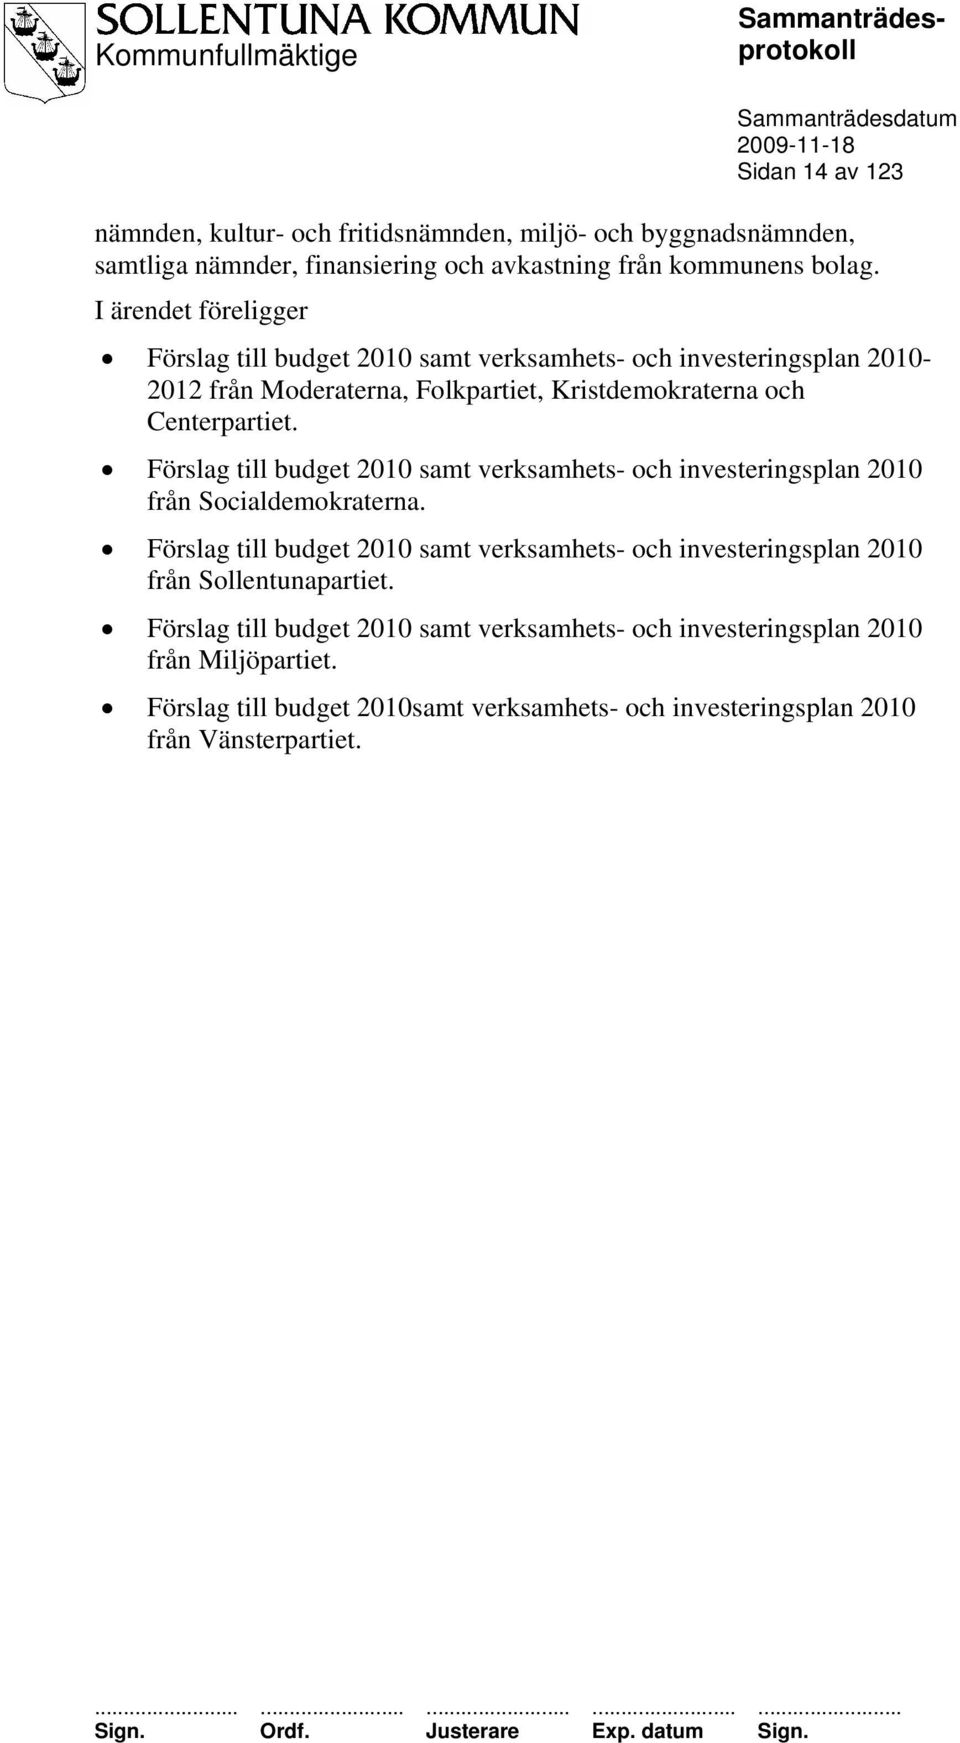 Förslag till budget 2010 samt verksamhets- och investeringsplan 2010 från Socialdemokraterna.